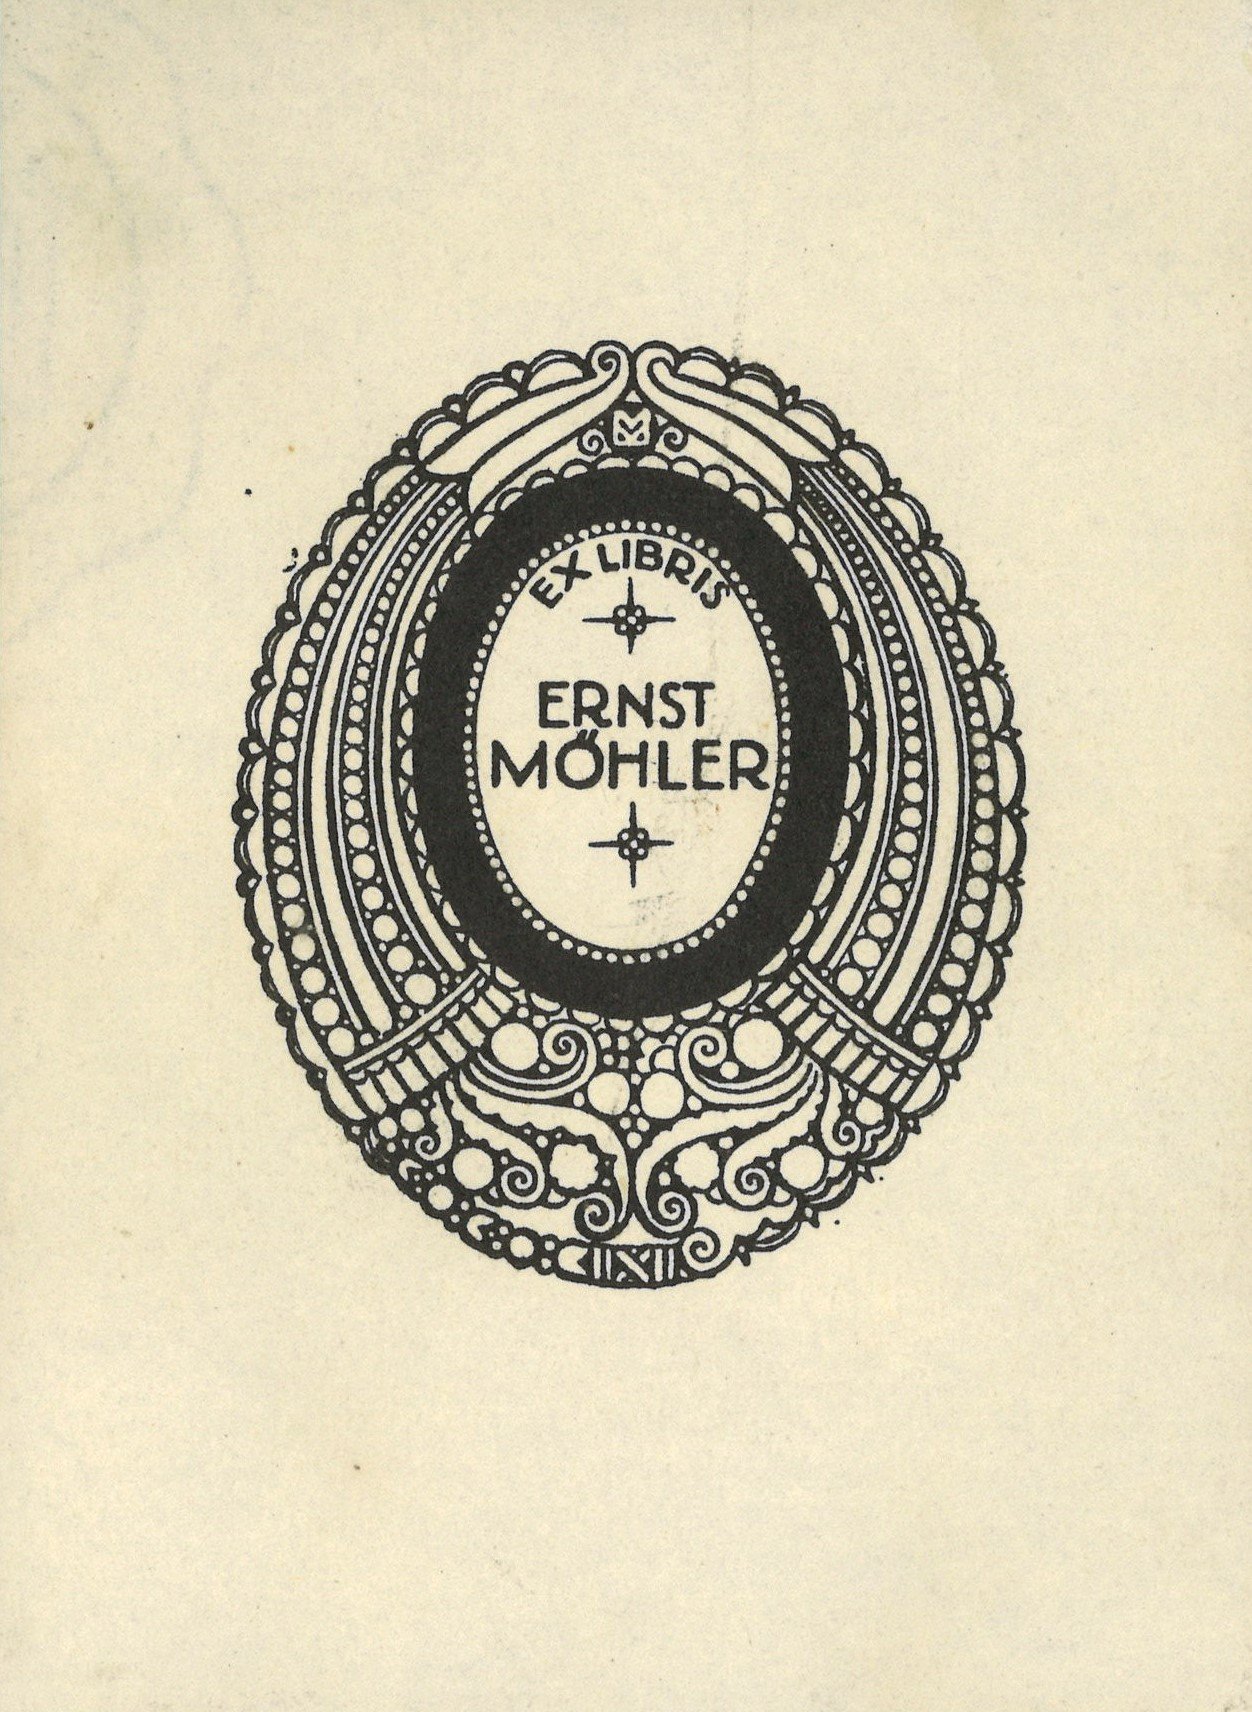 Exlibris Ernst Möhler (Landesgeschichtliche Vereinigung für die Mark Brandenburg e.V. CC BY)